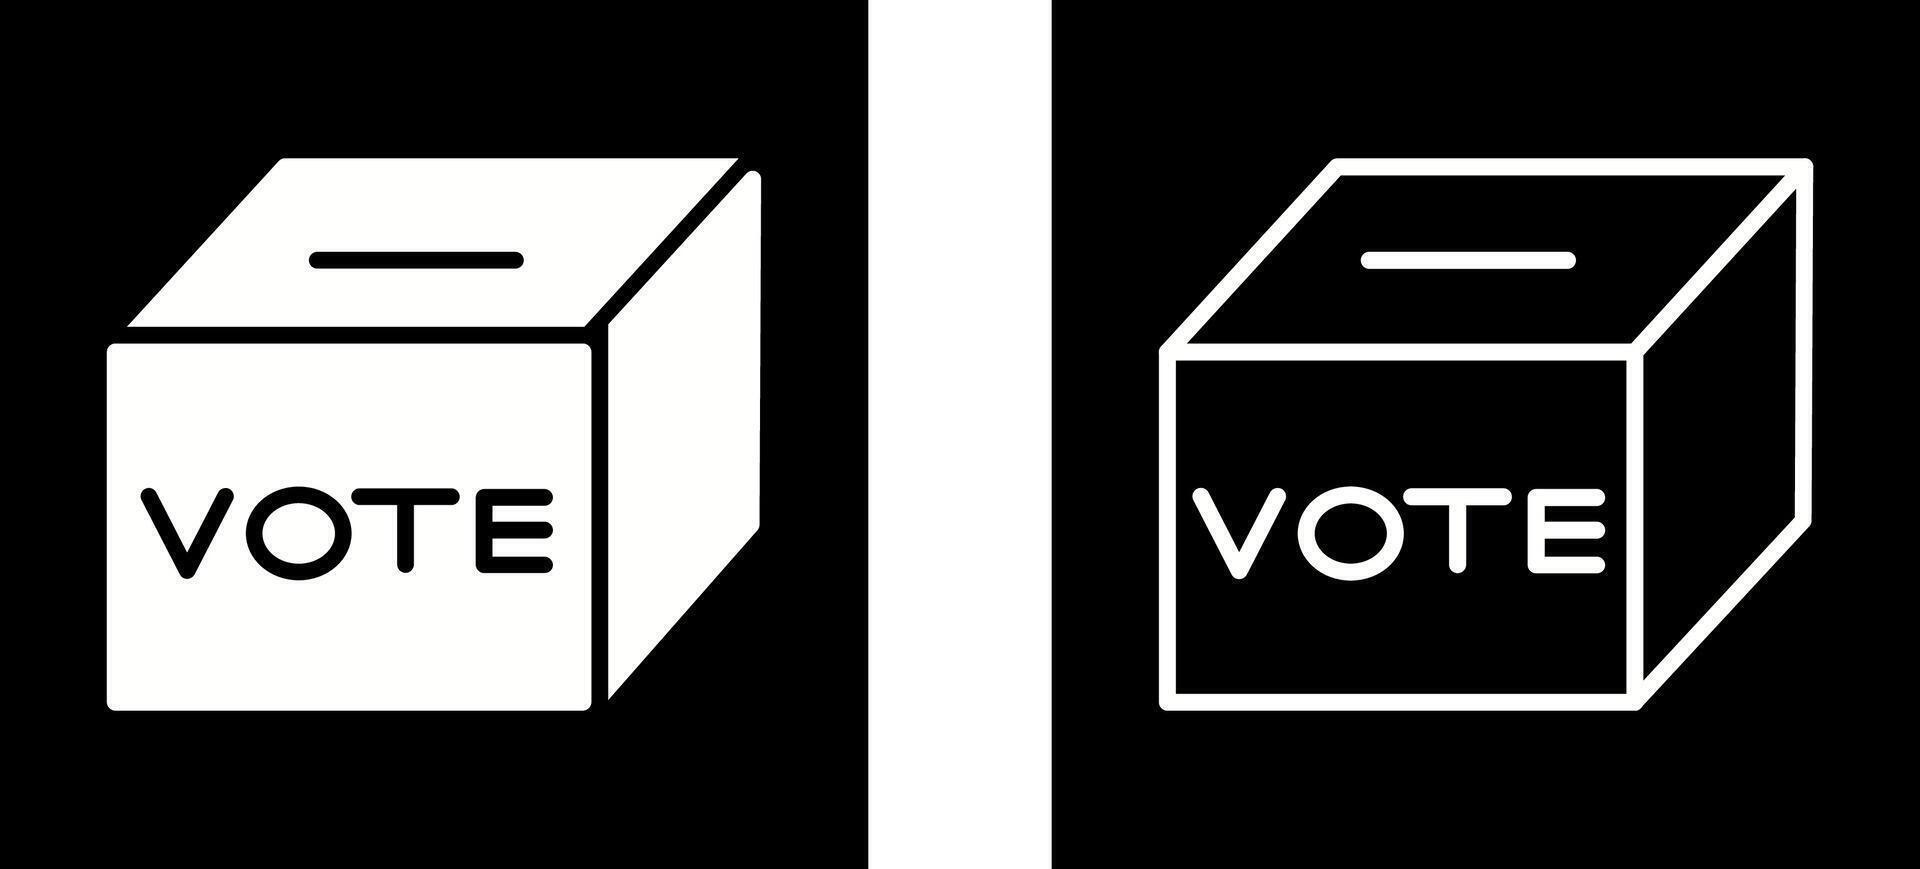 Wahlurne-Vektor-Symbol vektor